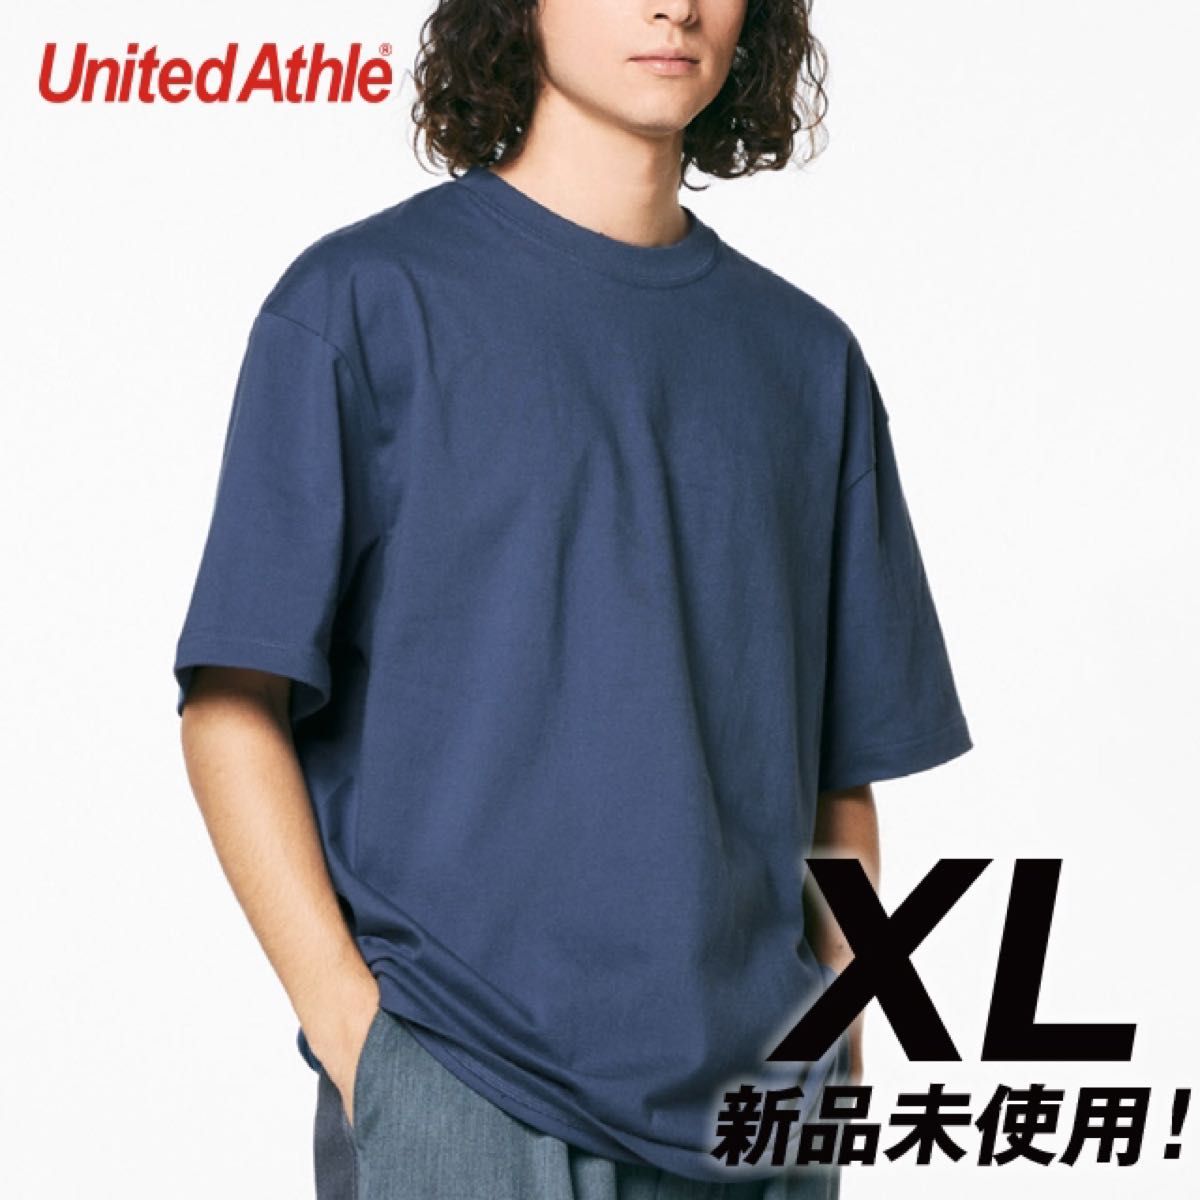 Tシャツ 半袖 5.6オンス ハイクオリティー【5001-01】XL ヘイジーネイビー 綿100%